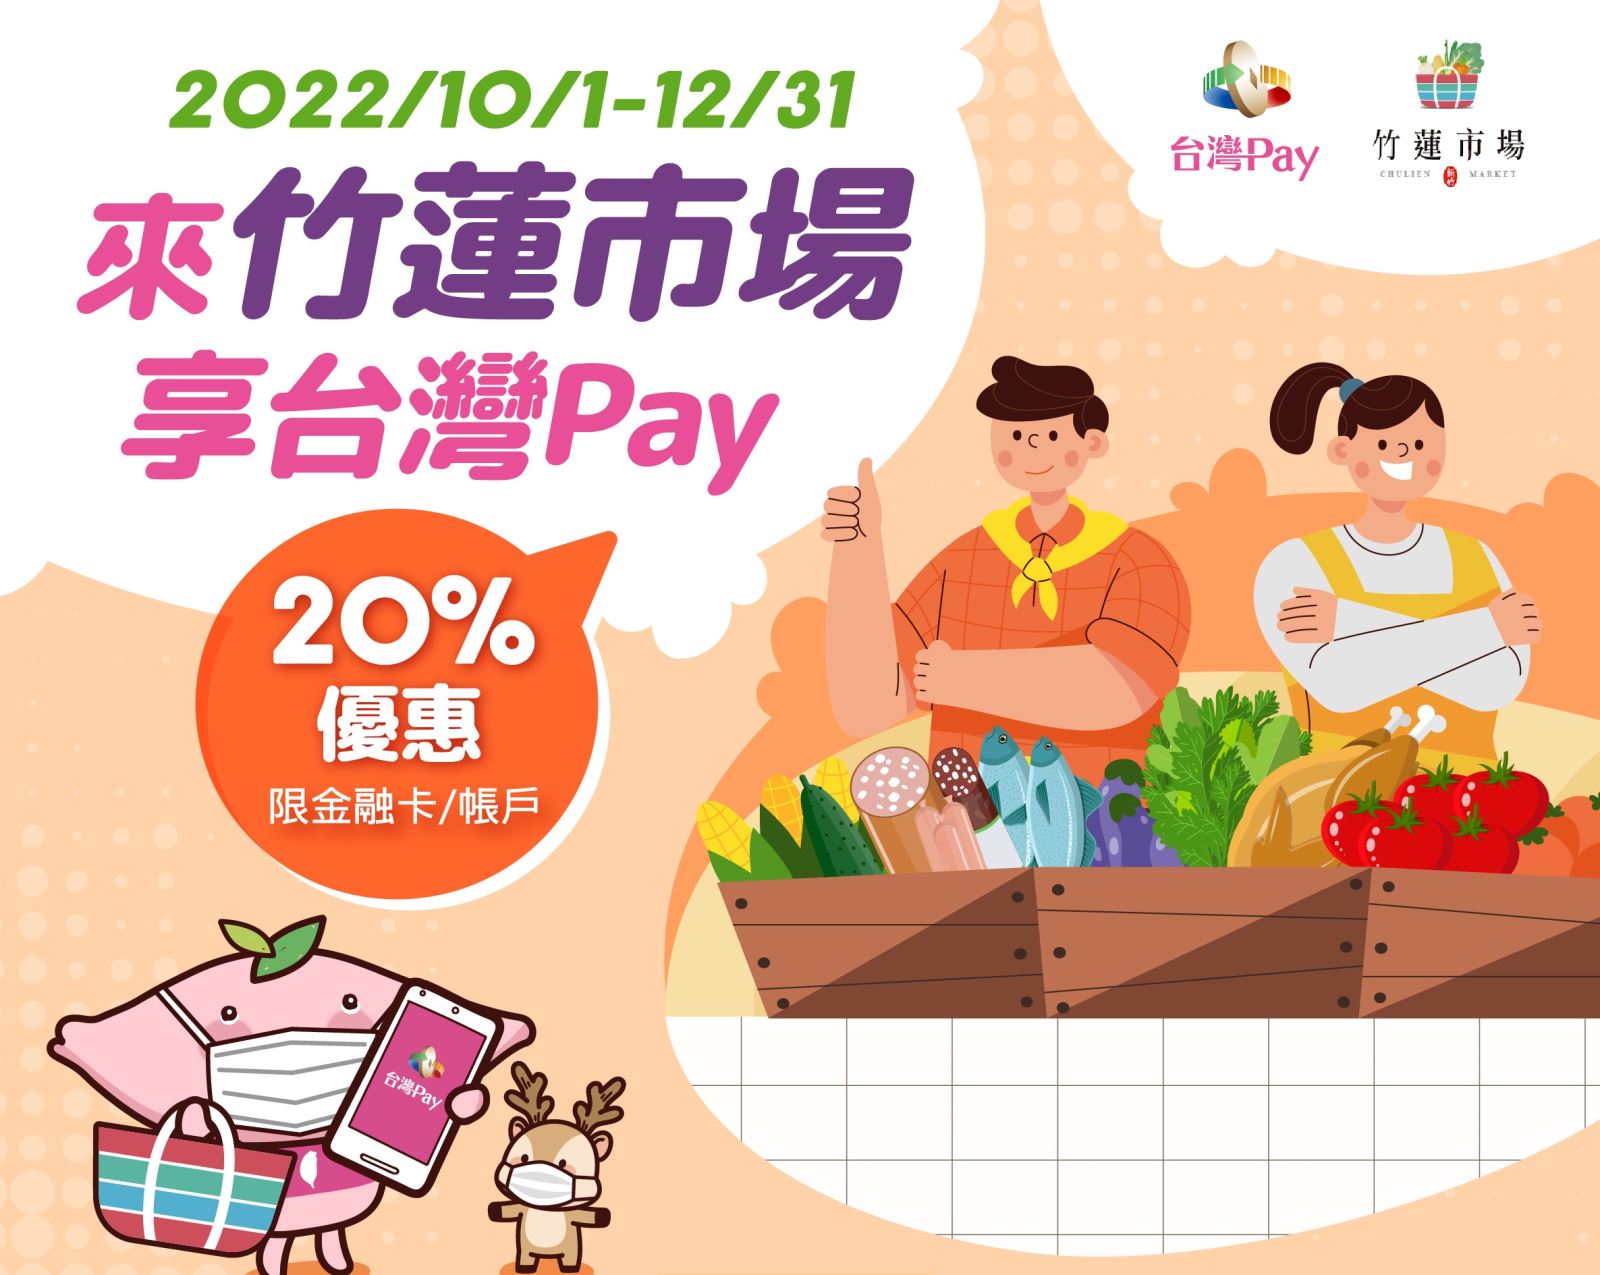 來竹蓮市場 享台灣 Pay 20%優惠。單筆消費不限金額即可享20%之現金回饋(此圖片為本優惠活動主要視覺，活動內容請參考活動辦法說明文字)